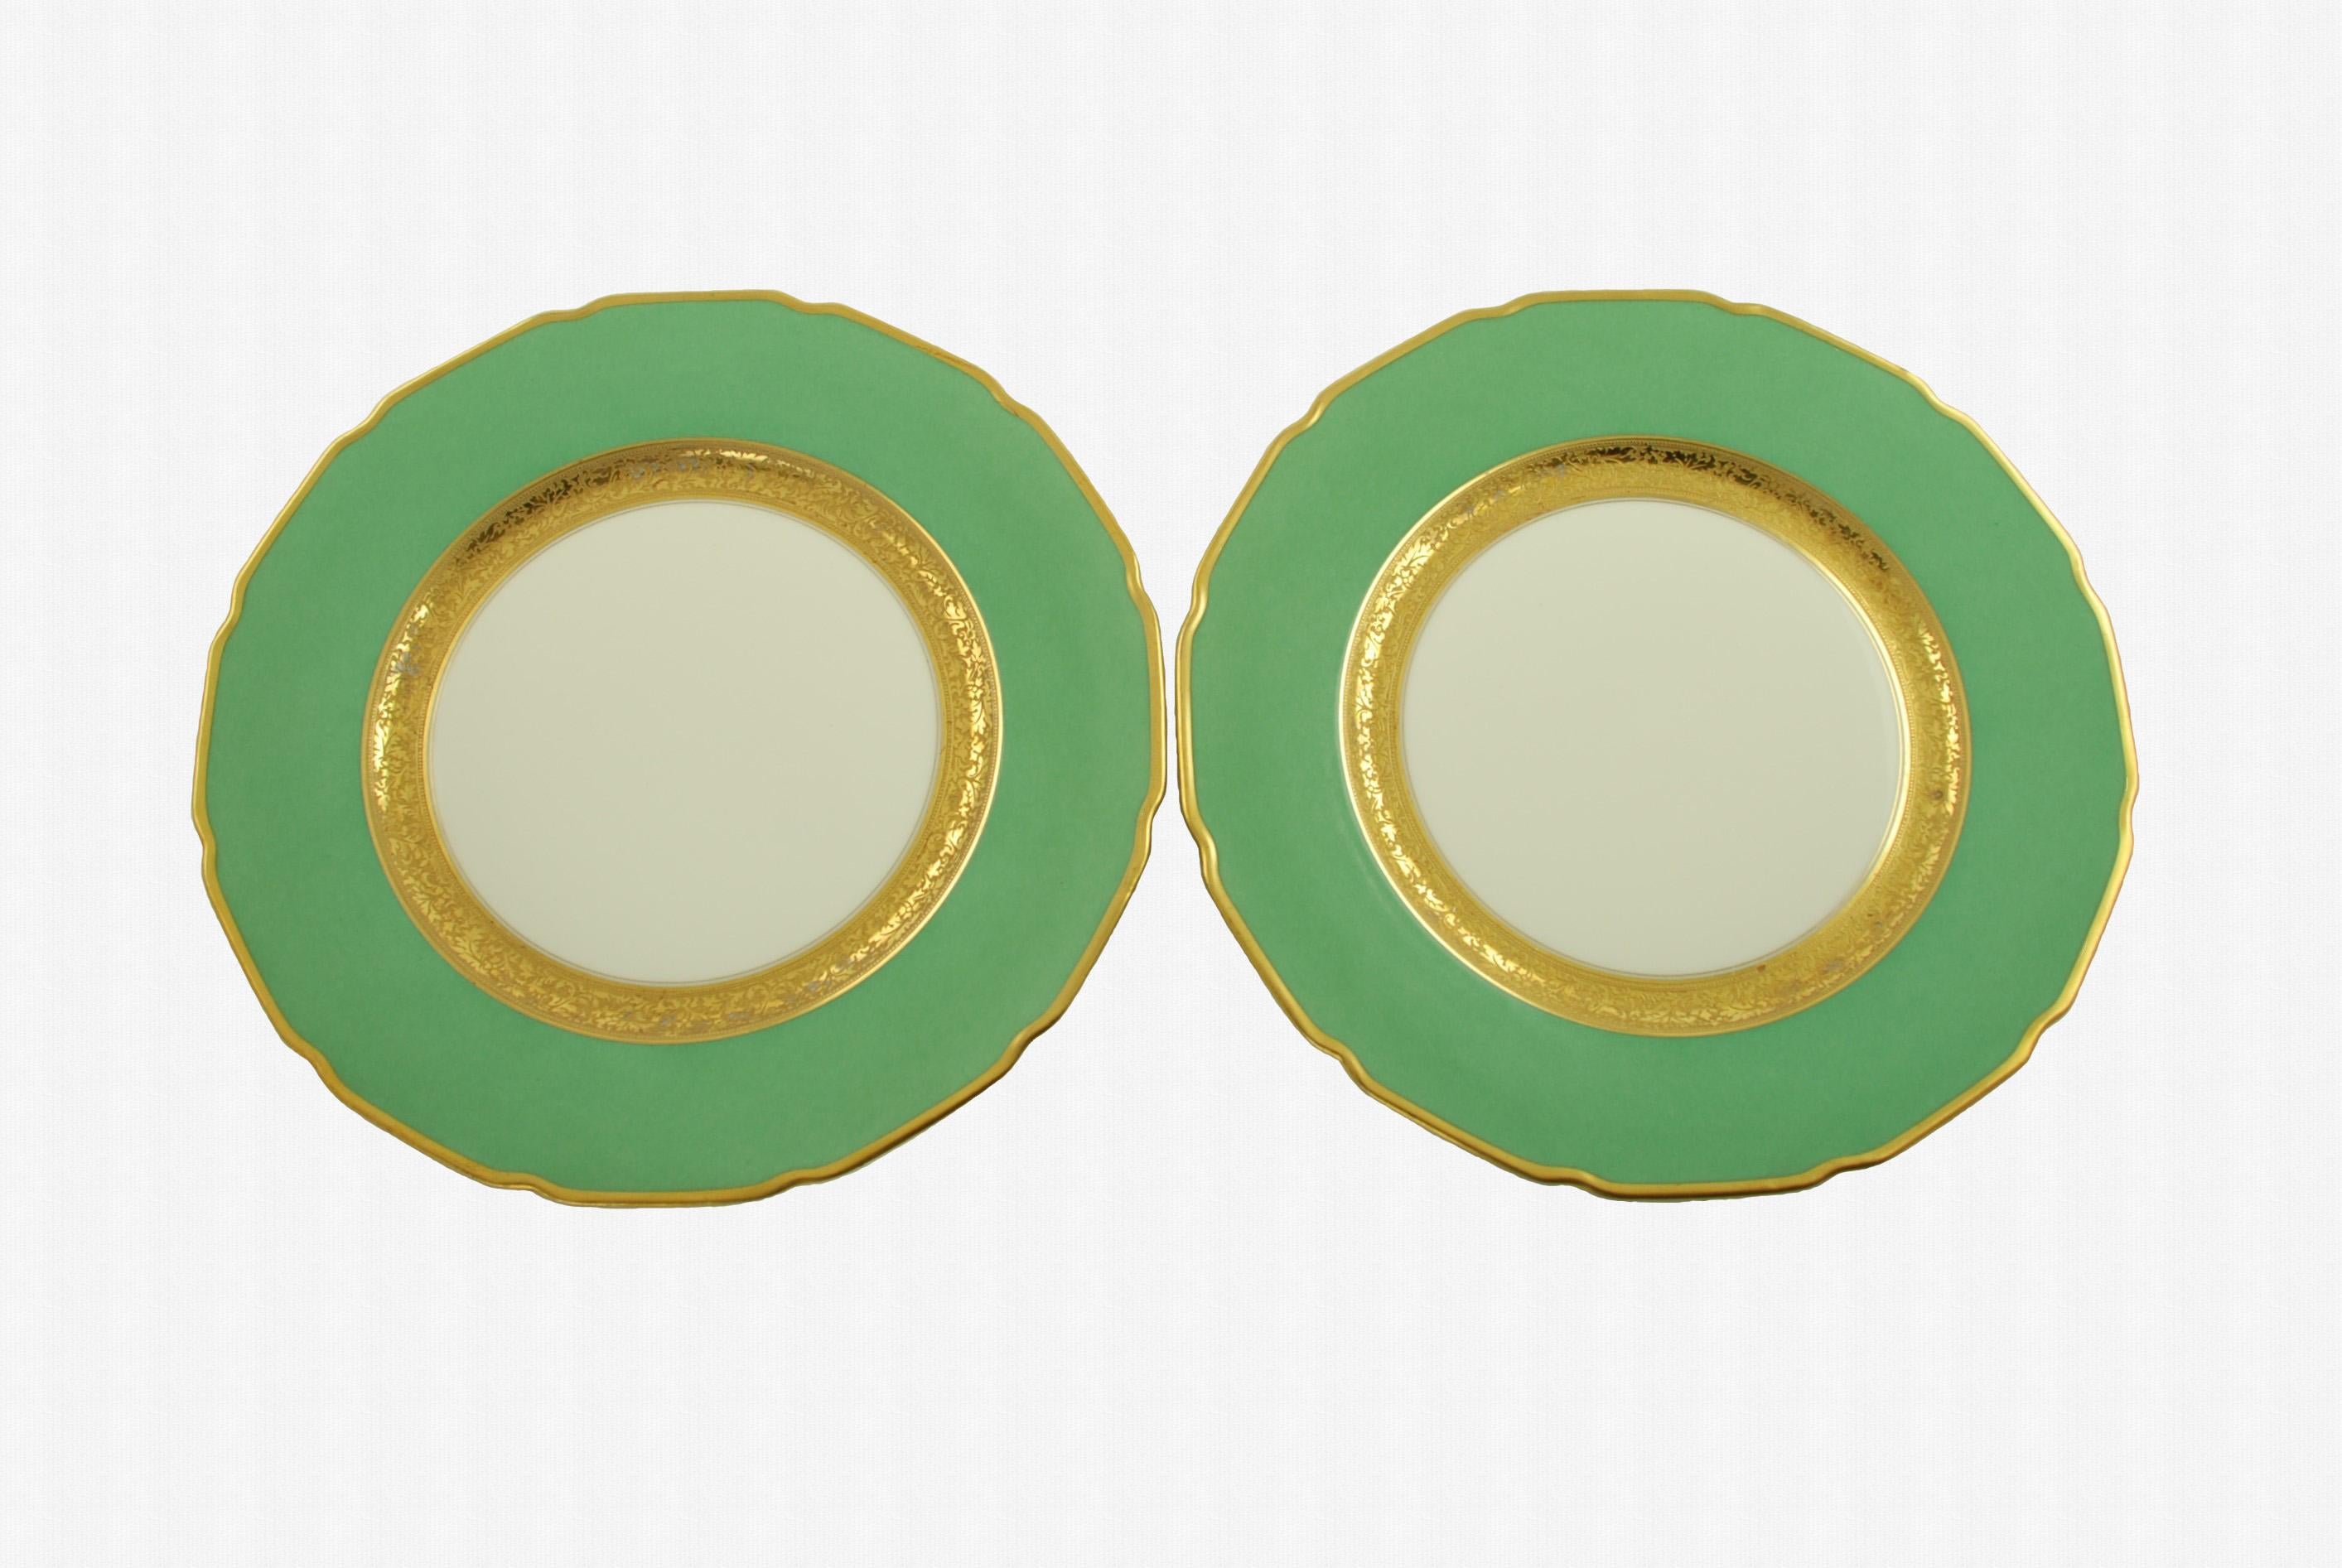 Antique Tressemanes & Vogt Porcelain Dinner Plates with Green Band and Gilt Trim 3